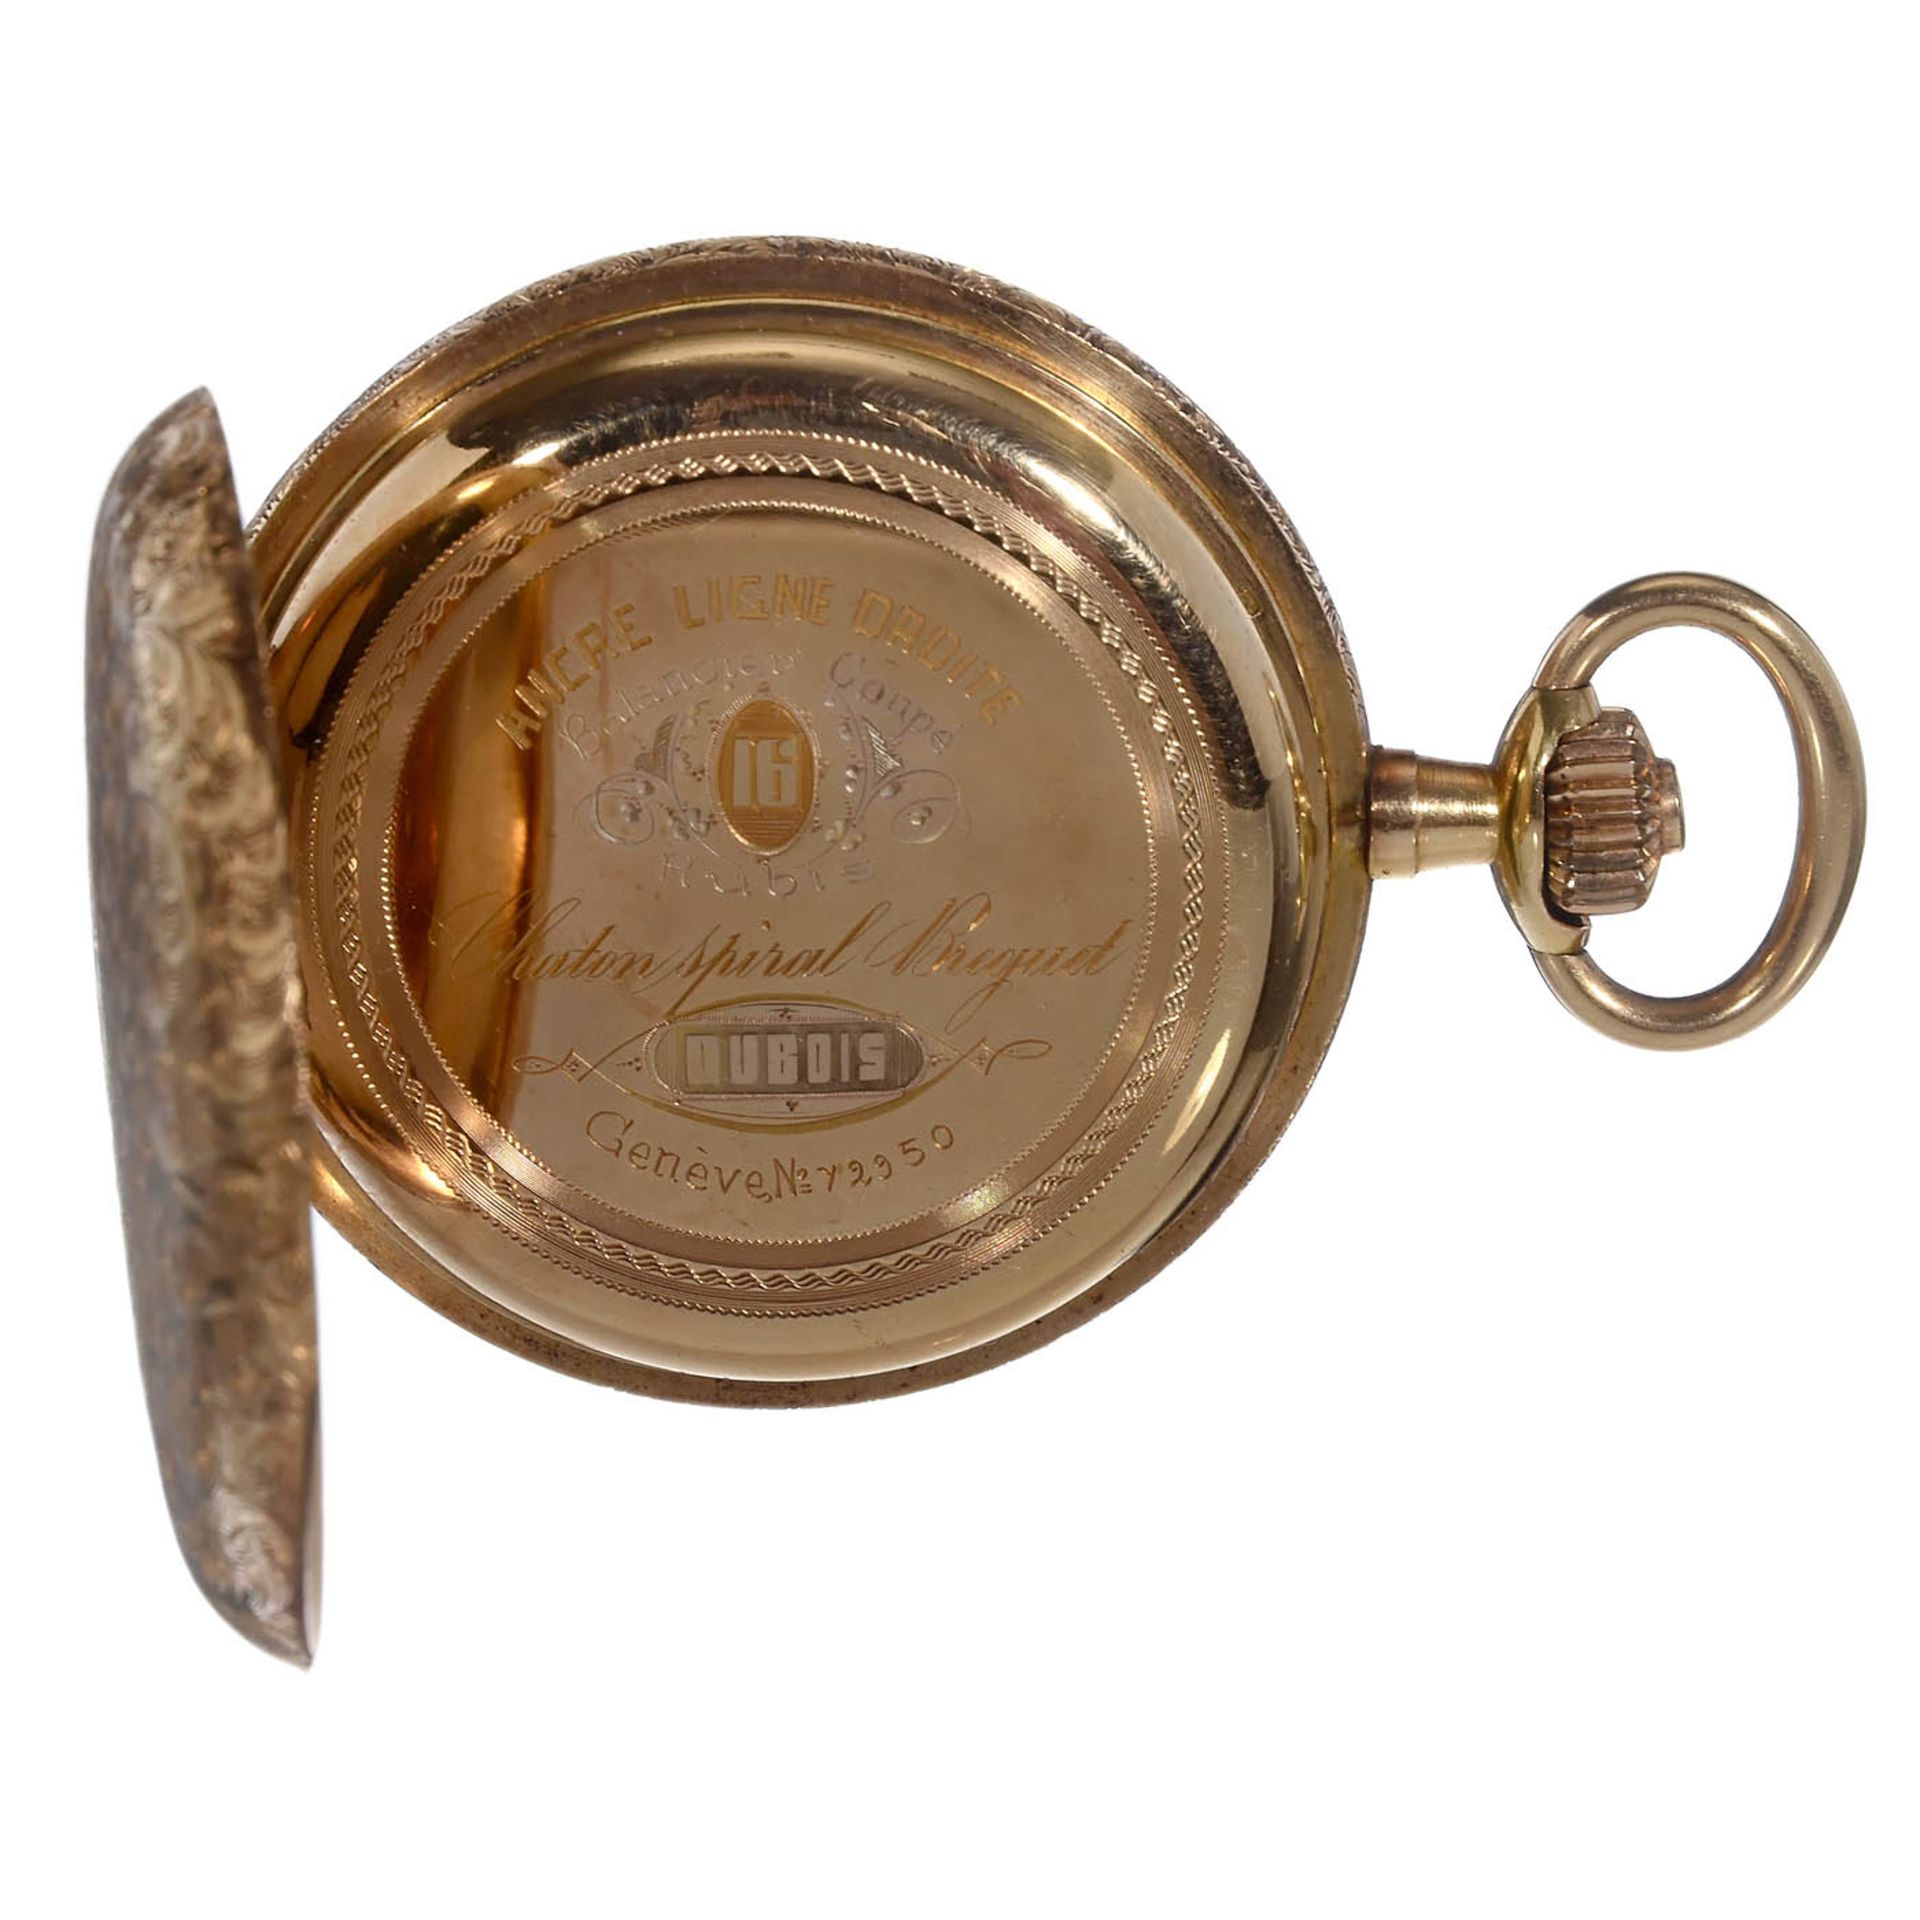 Goldene Taschenuhr (18 Karat) von Dubois, um 1885Genf, Schweiz. Nr. 72950, Sprungdeckel, - Bild 3 aus 6